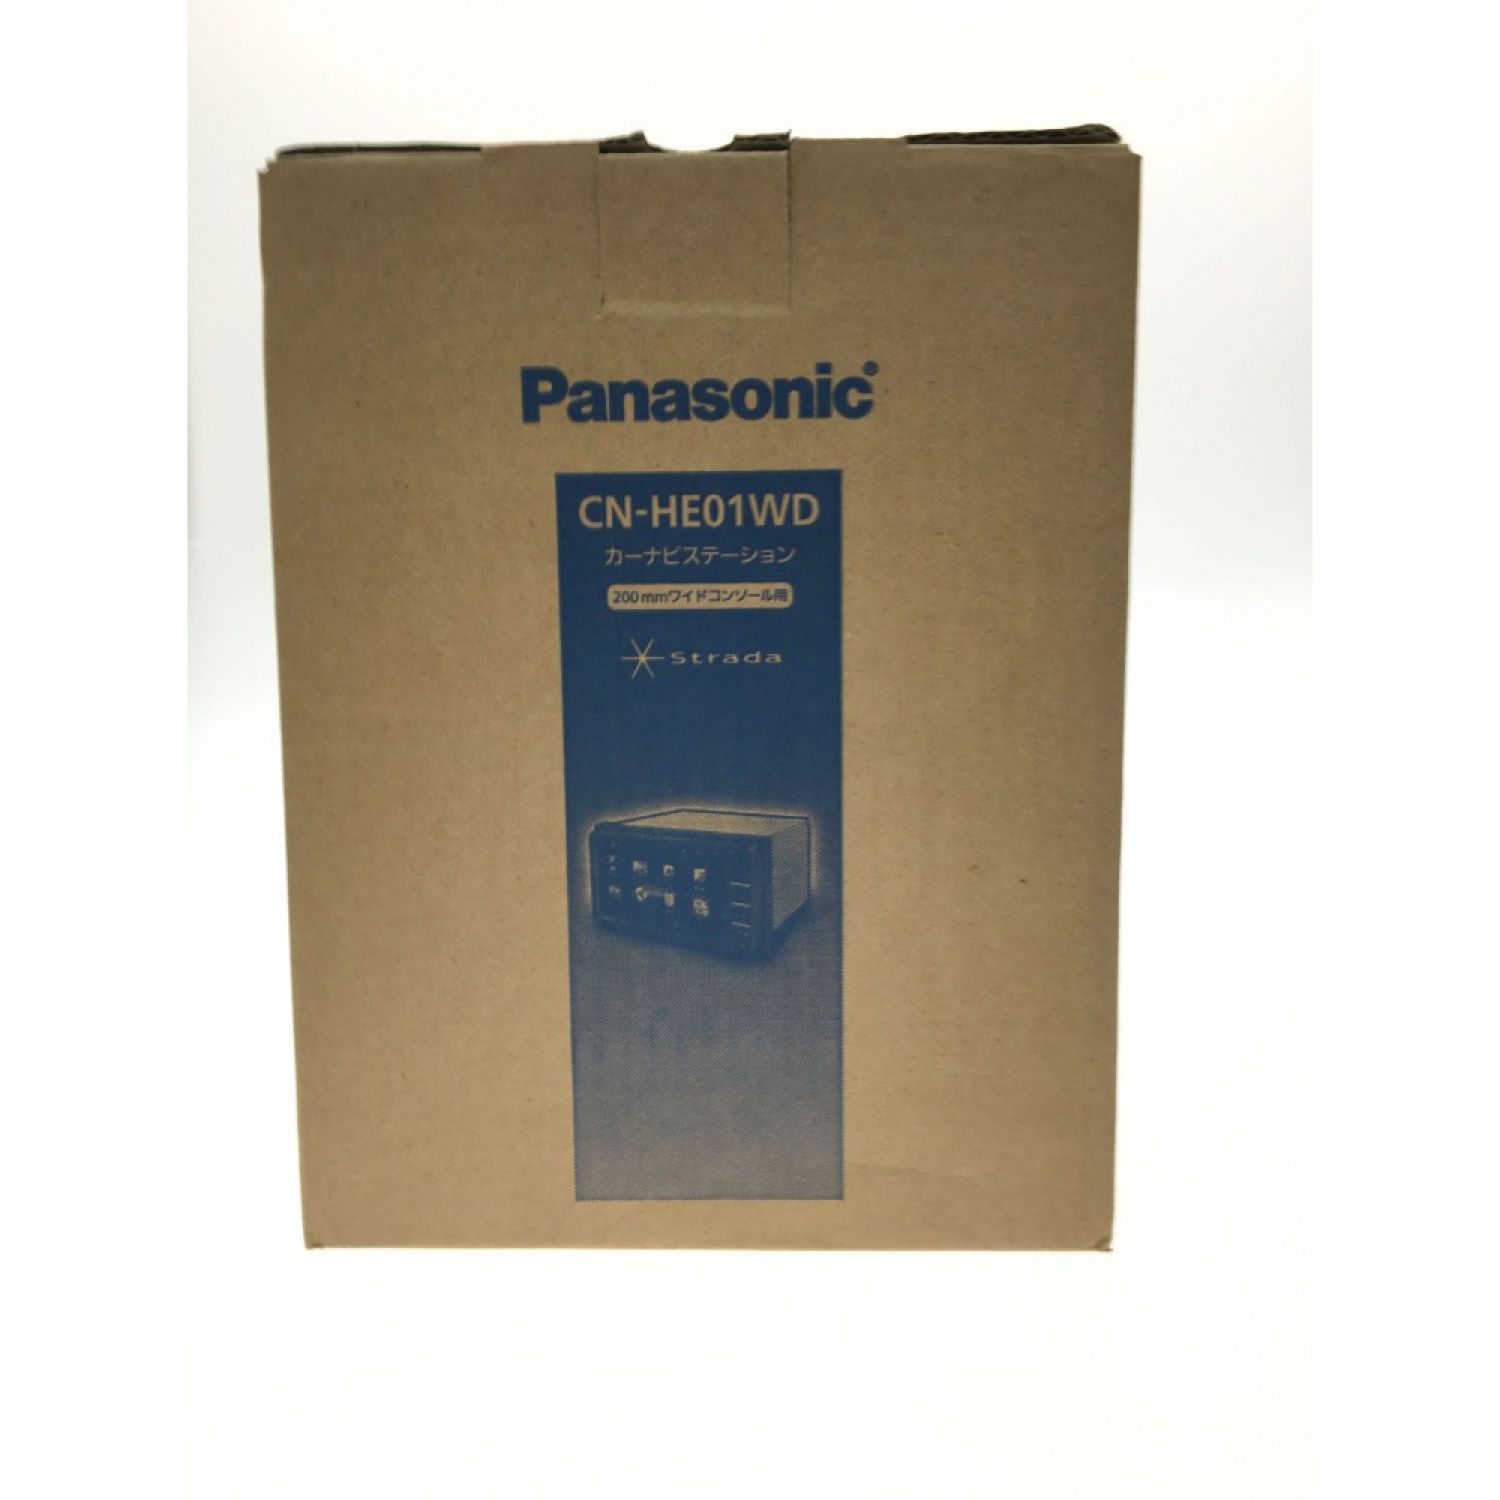 中古】 Panasonic パナソニック カーナビ Panasonic CN-HE01WD 未使用